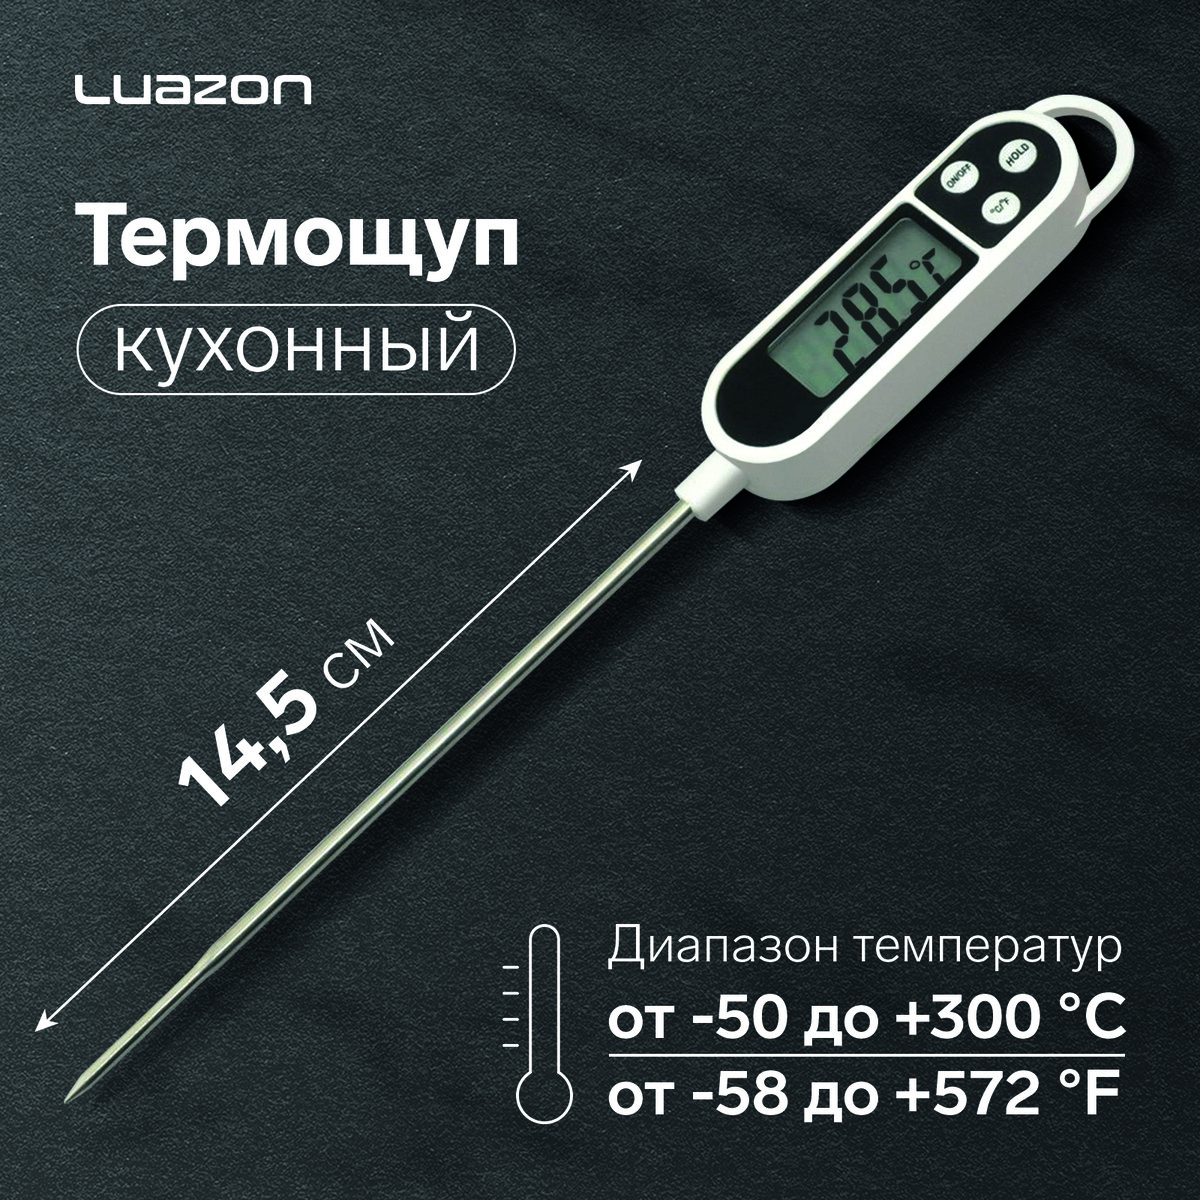 Термощуп кухонный luazon ltr-01, максимальная температура 300 °c, от lr44, белый термощуп кухонный ltp 001 максимальная температура 200 °c от батареек lr44